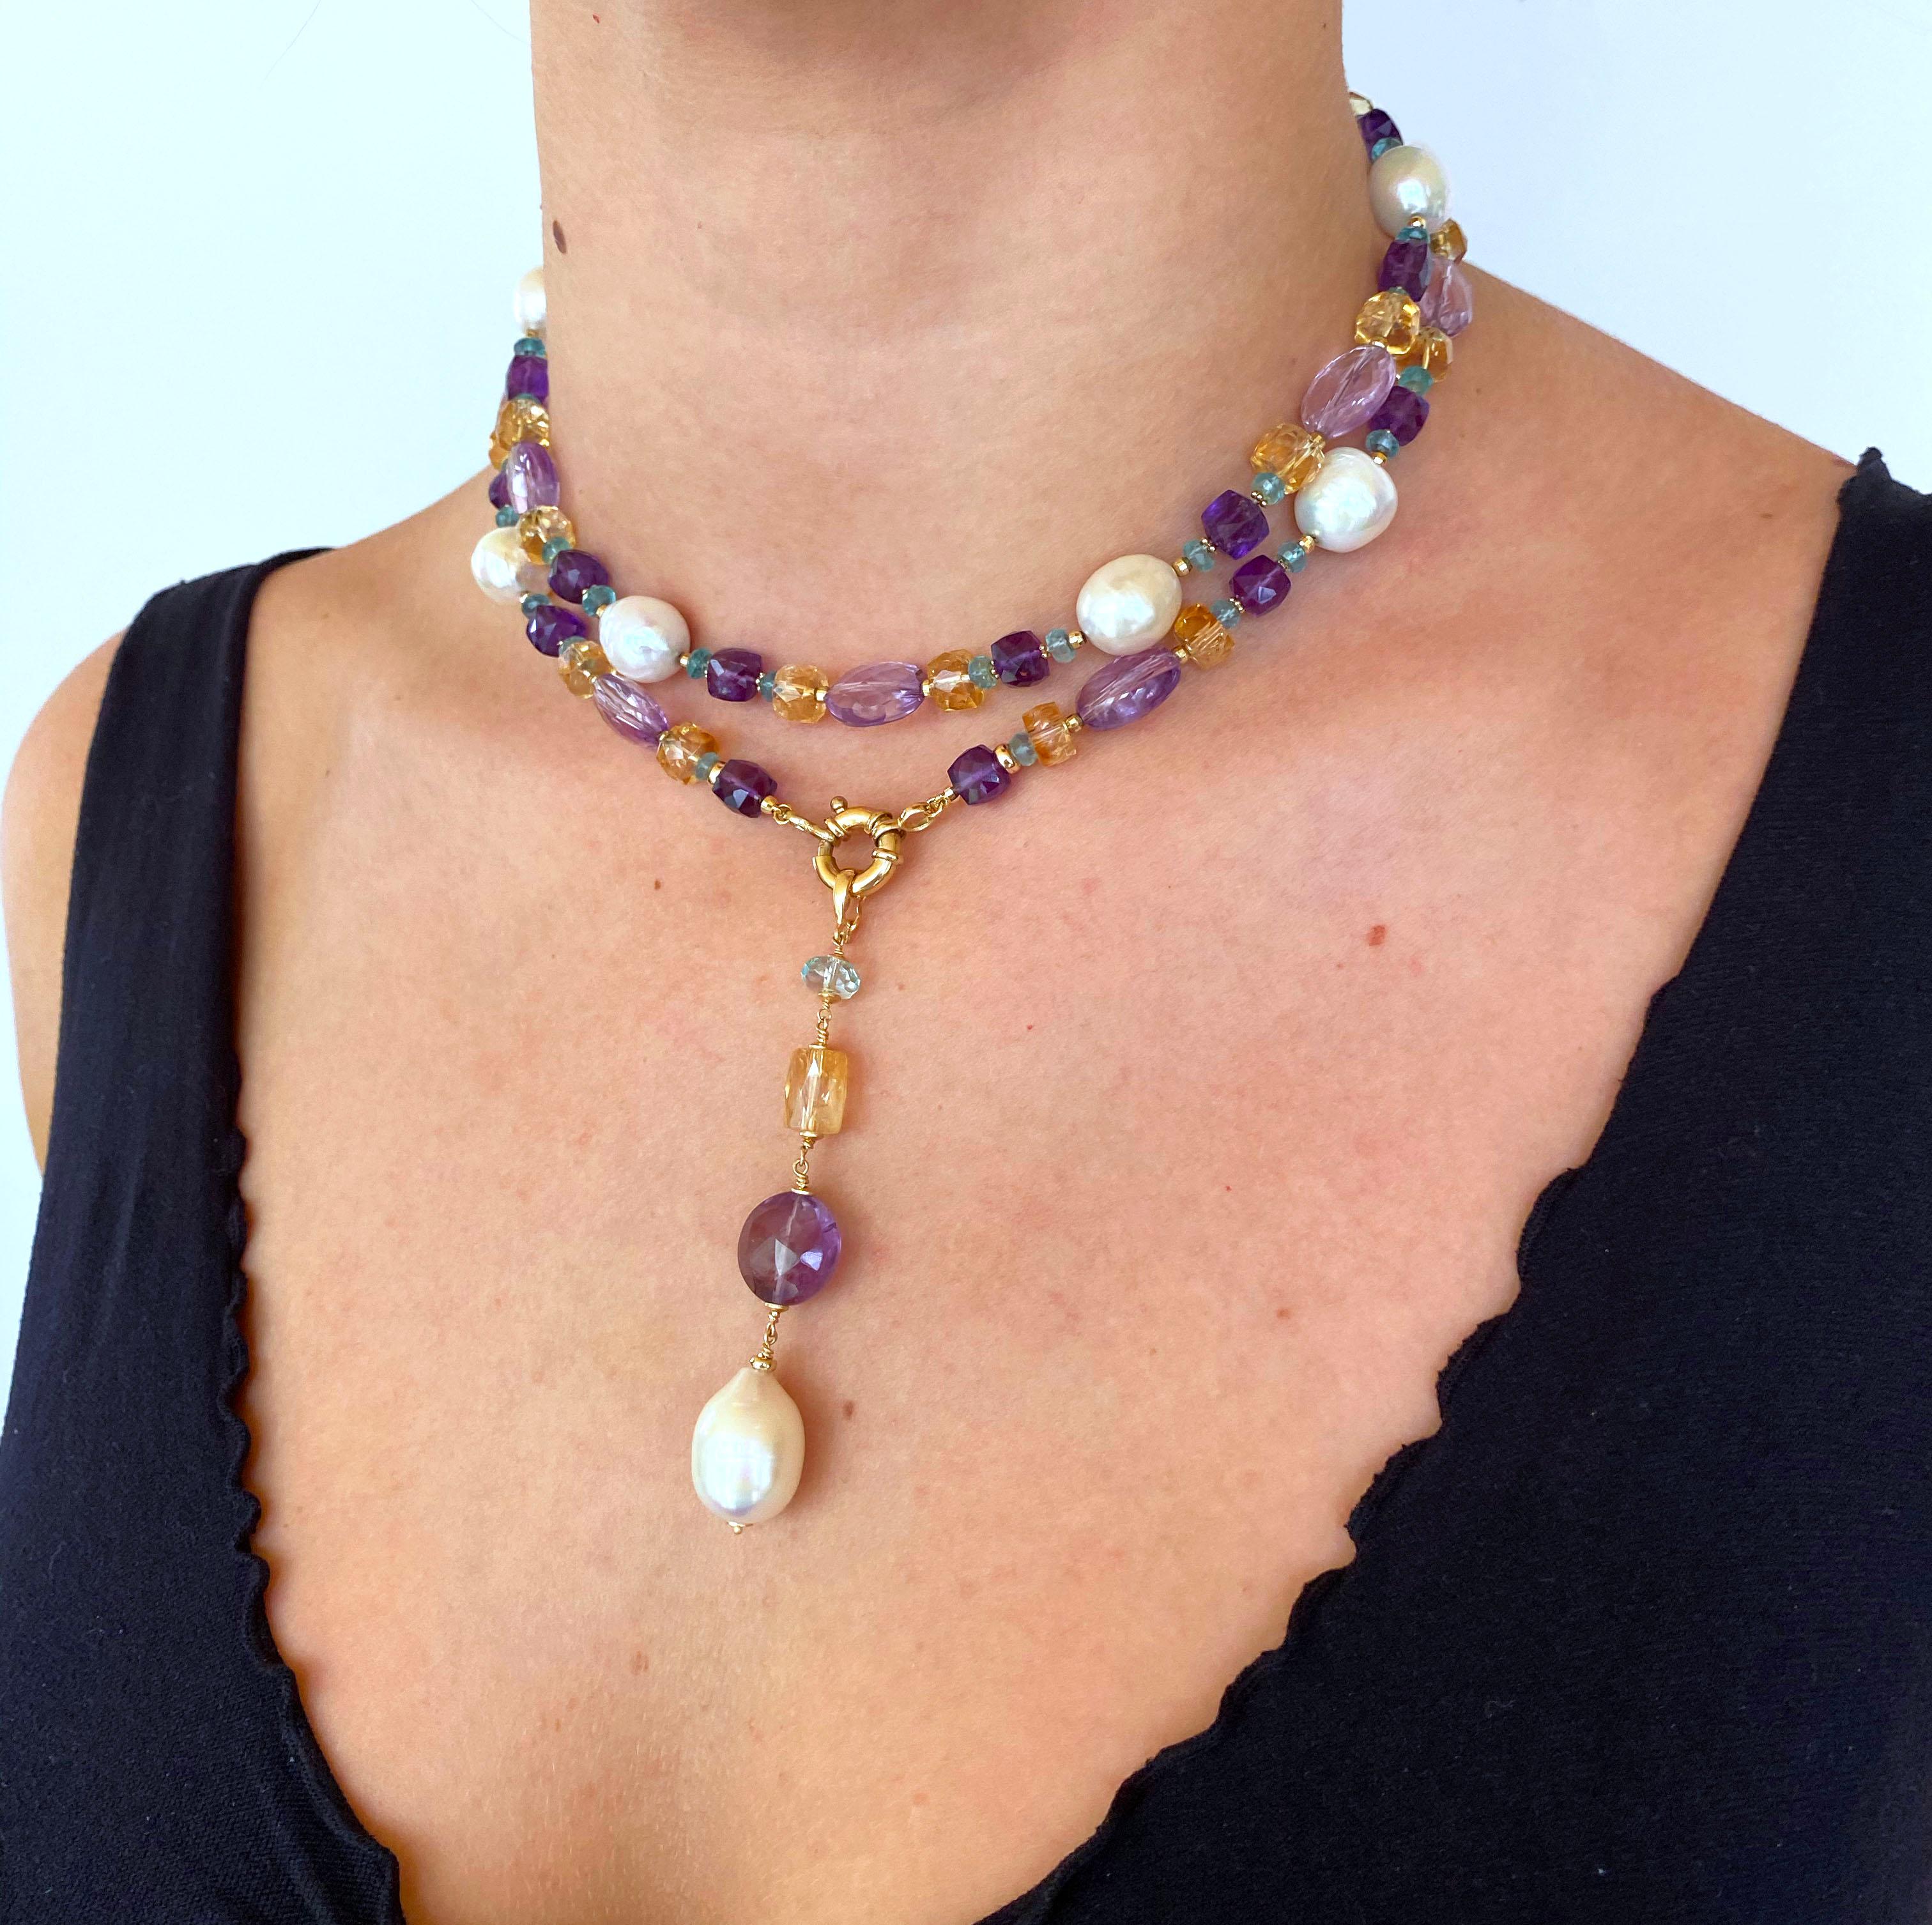 Ce magnifique Sautoir coloré et multi-bijoux présente des perles brillantes de différentes formes, des améthystes, des citrines et des aigue-marines magnifiquement complétées par de petites perles multiformes en or jaune 14 carats. Ce Sautoir se